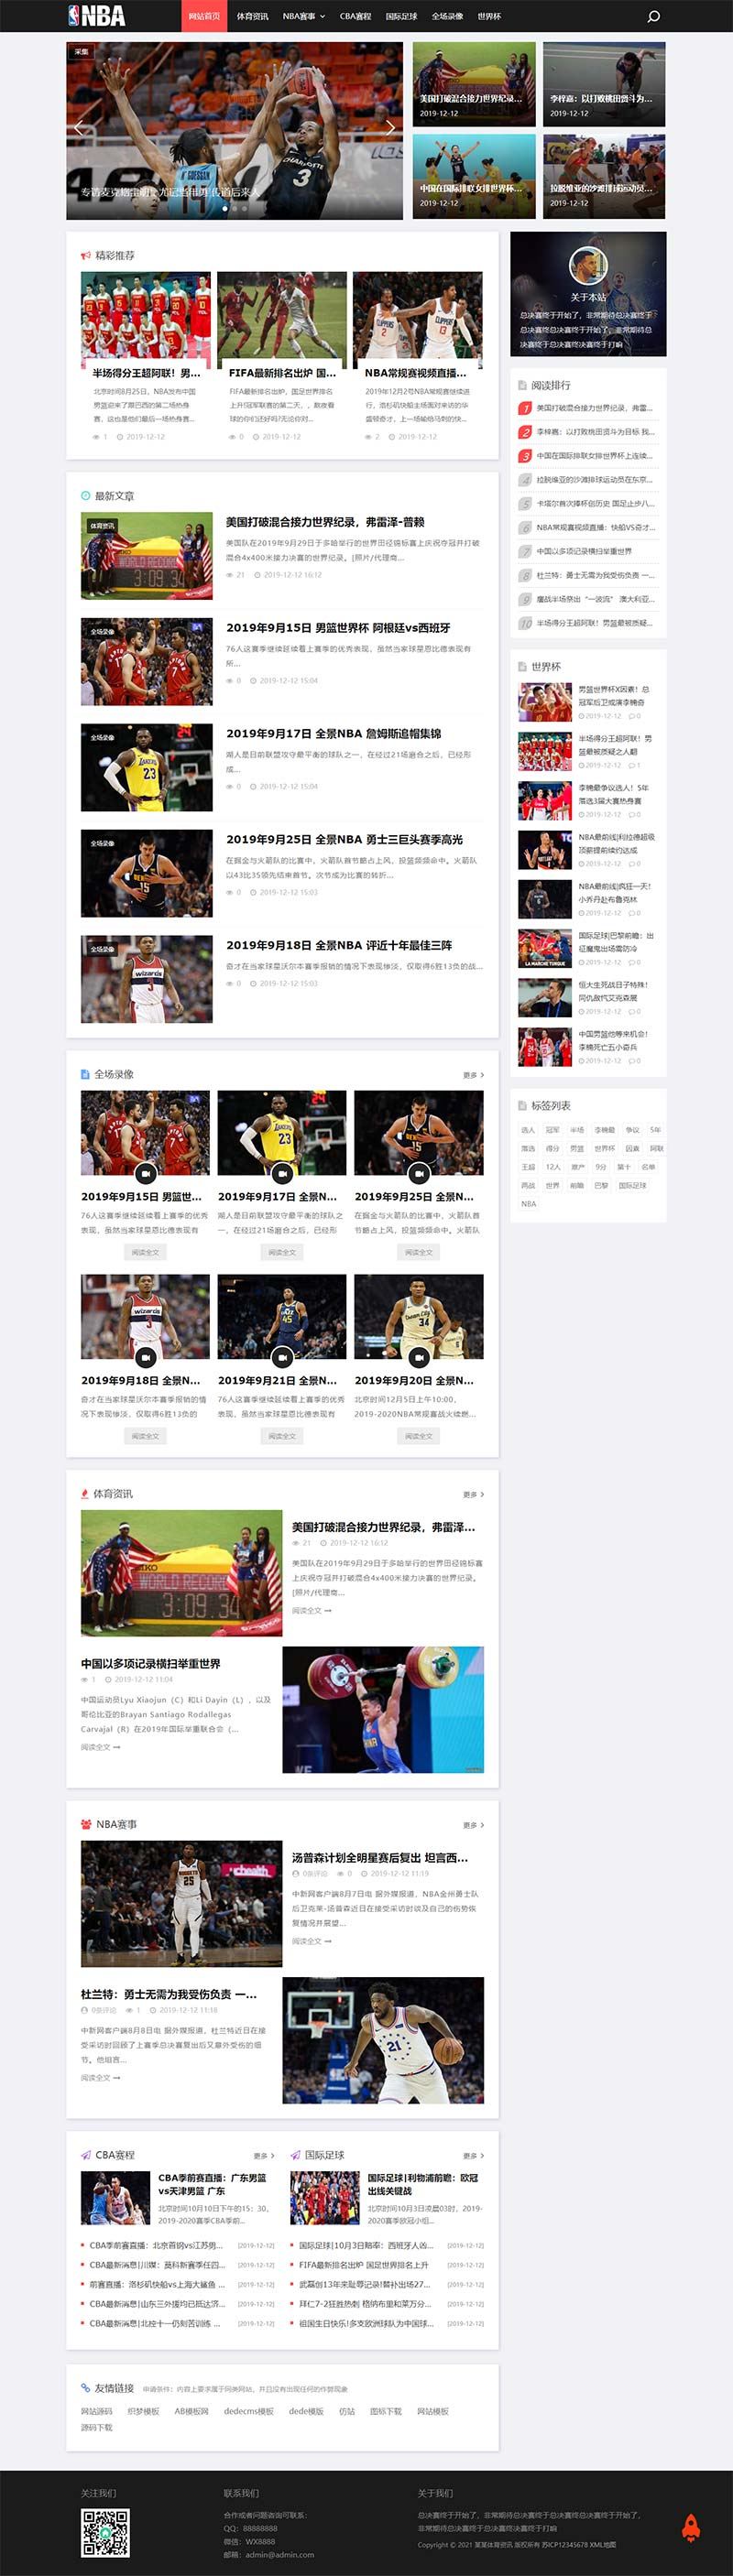 (自适应手机版)响应式NBA体育赛事资讯类织梦模板 黑色体育新闻资讯网站模板下载插图